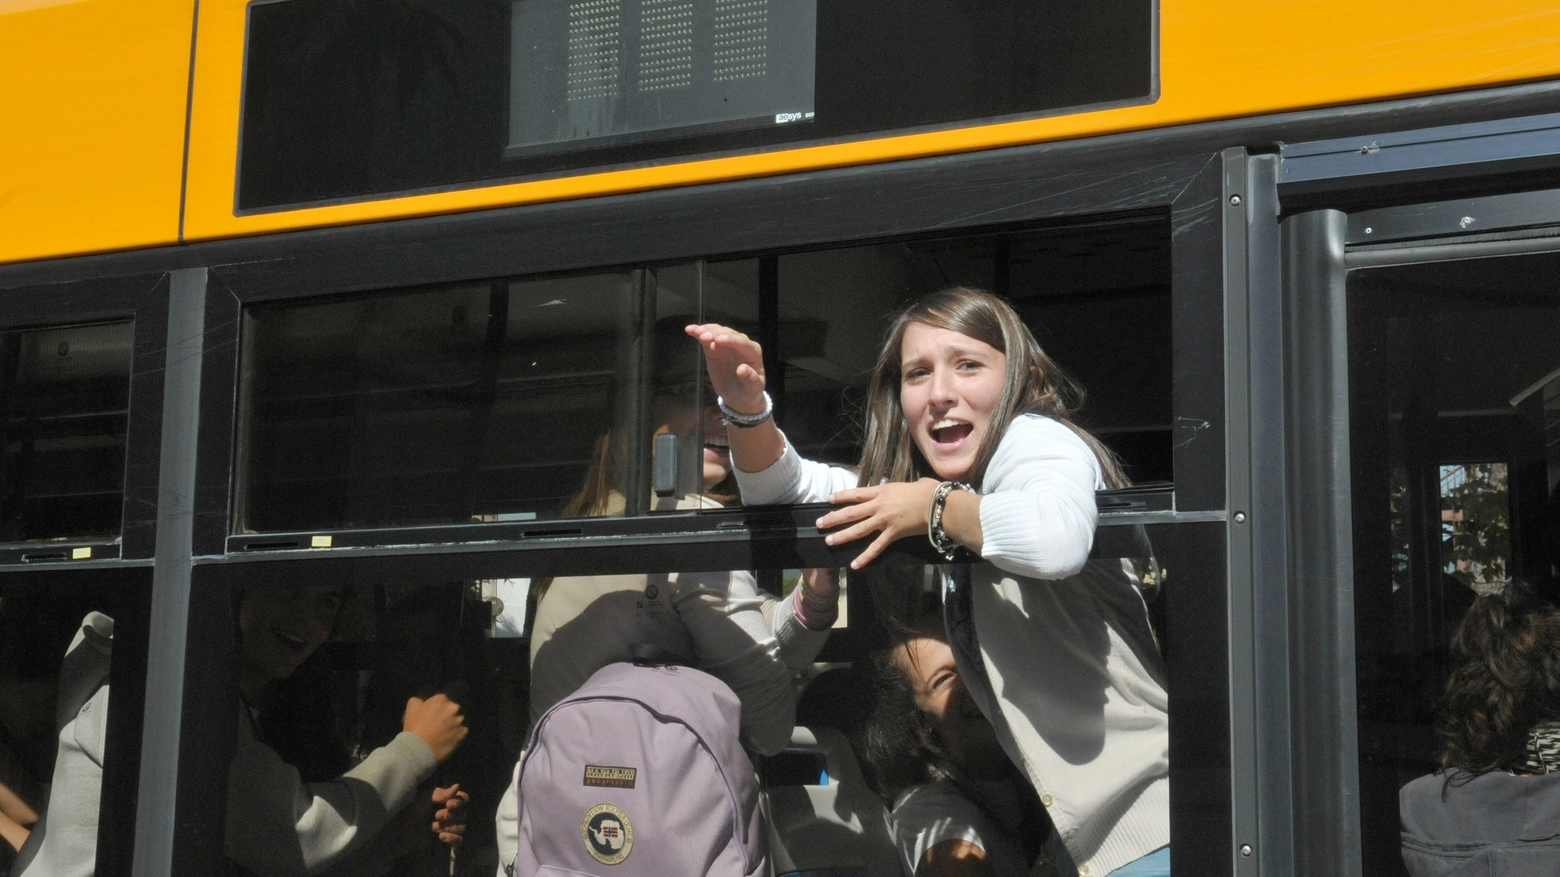 Studenti sul bus